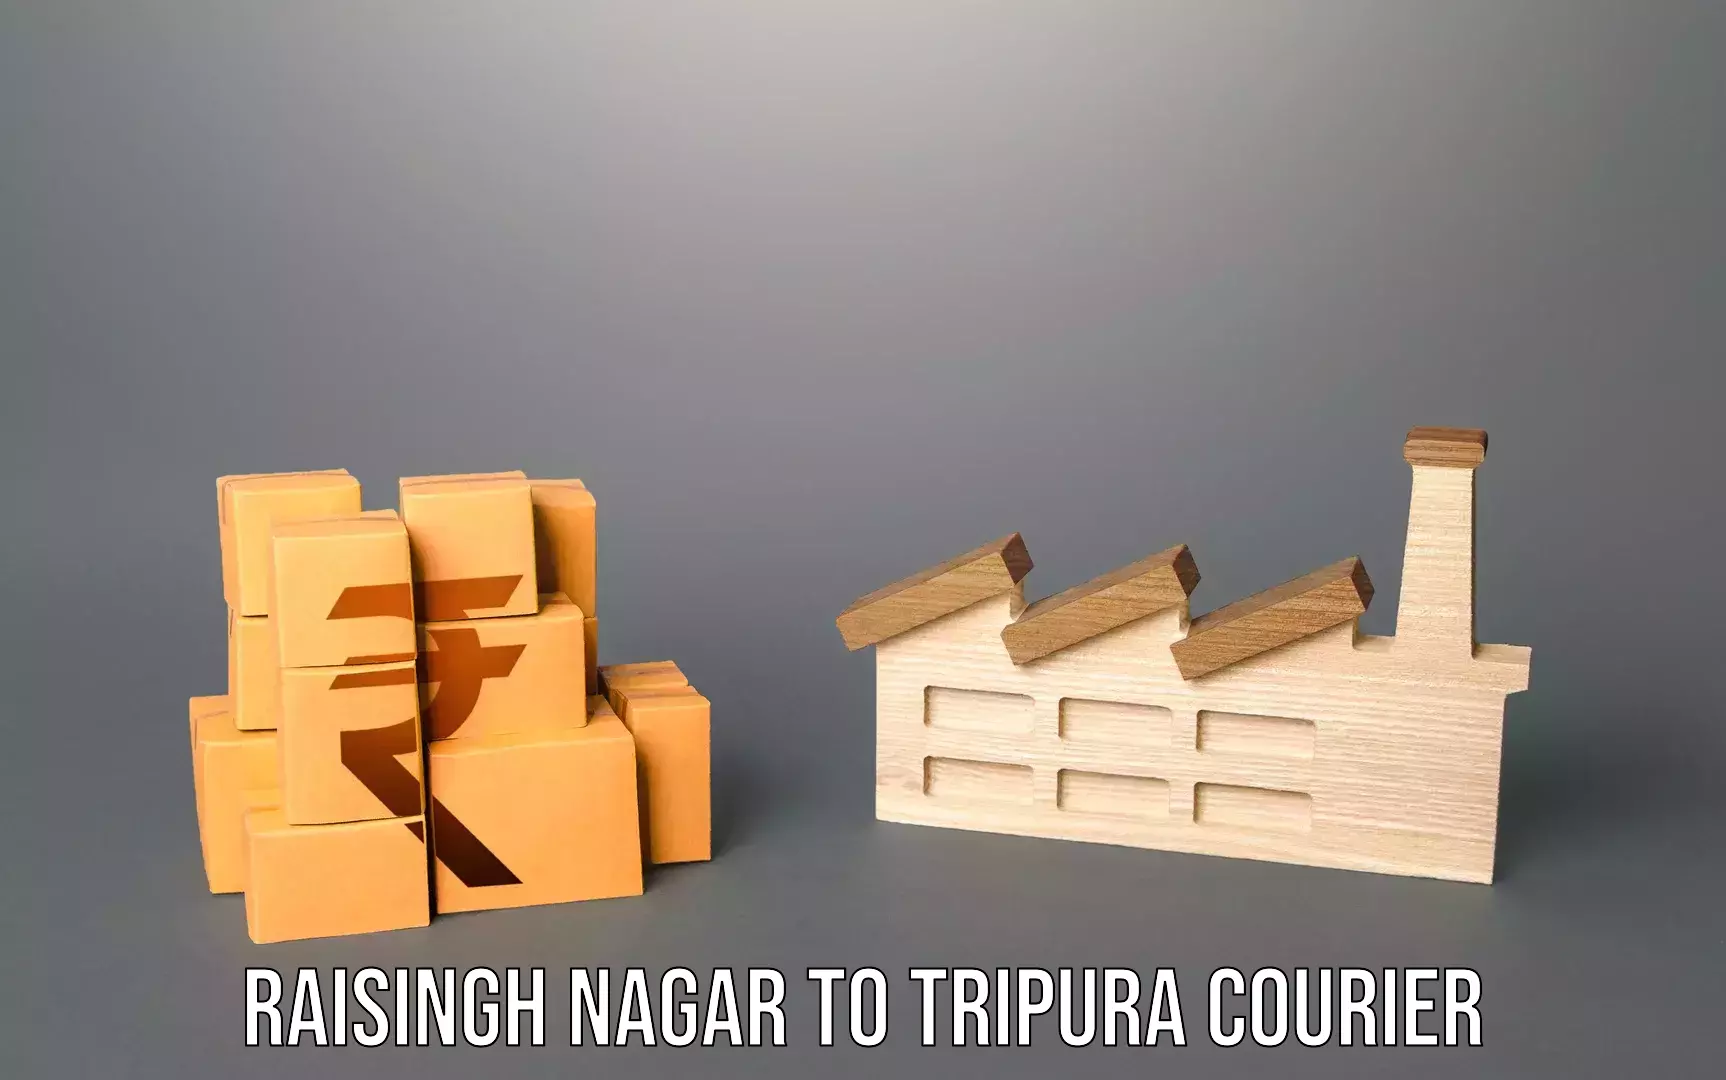 Baggage transport coordination Raisingh Nagar to IIIT Agartala